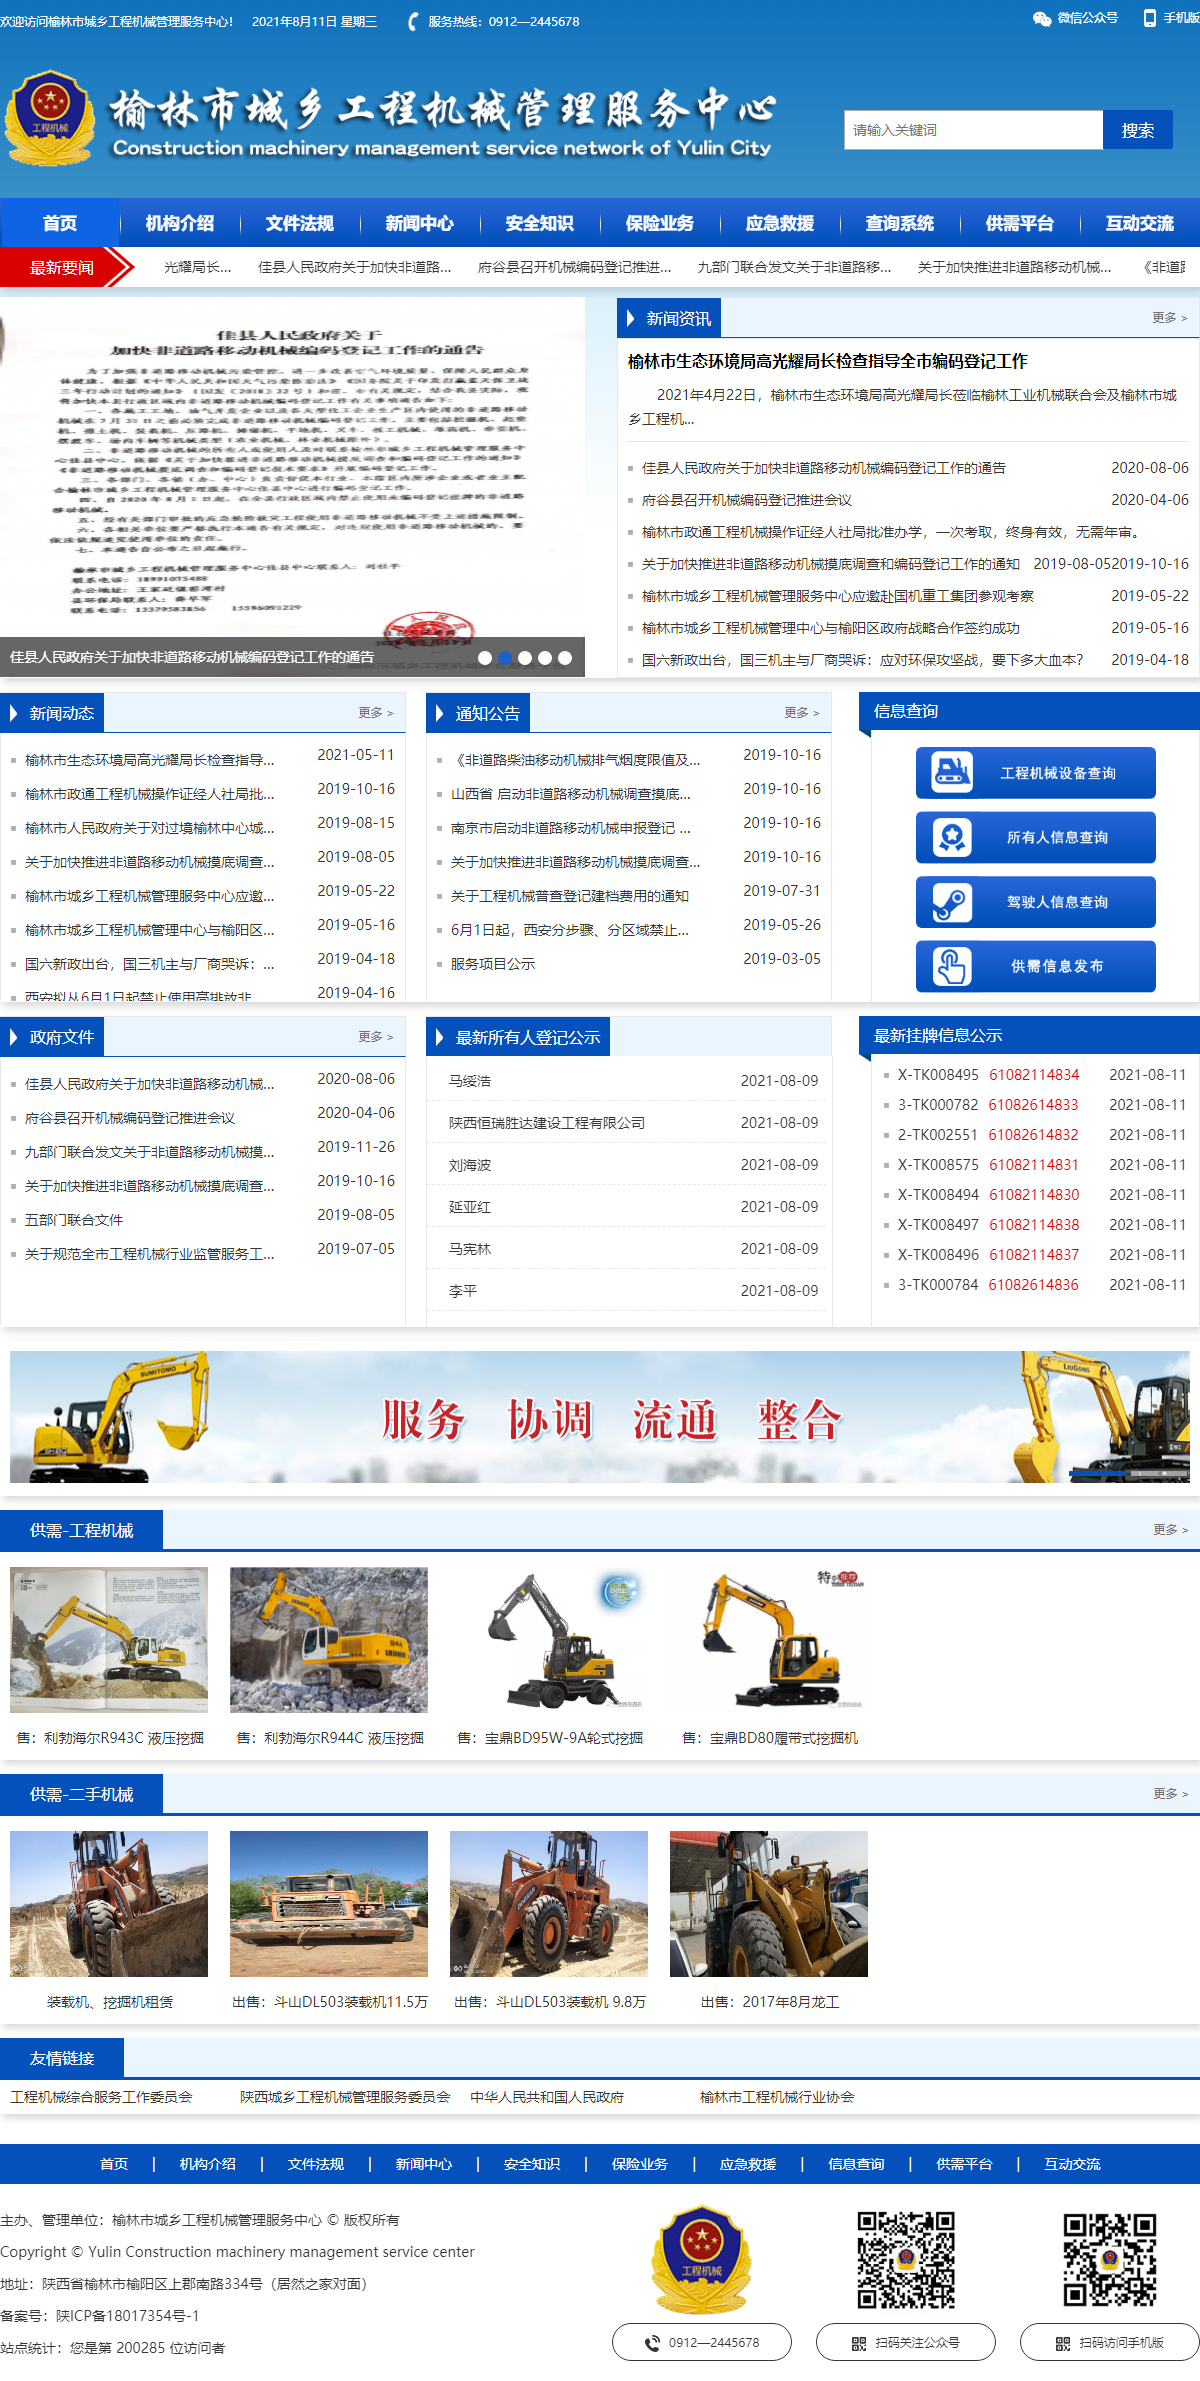 榆林市城乡工程机械管理服务中心（有限合伙）网站案例